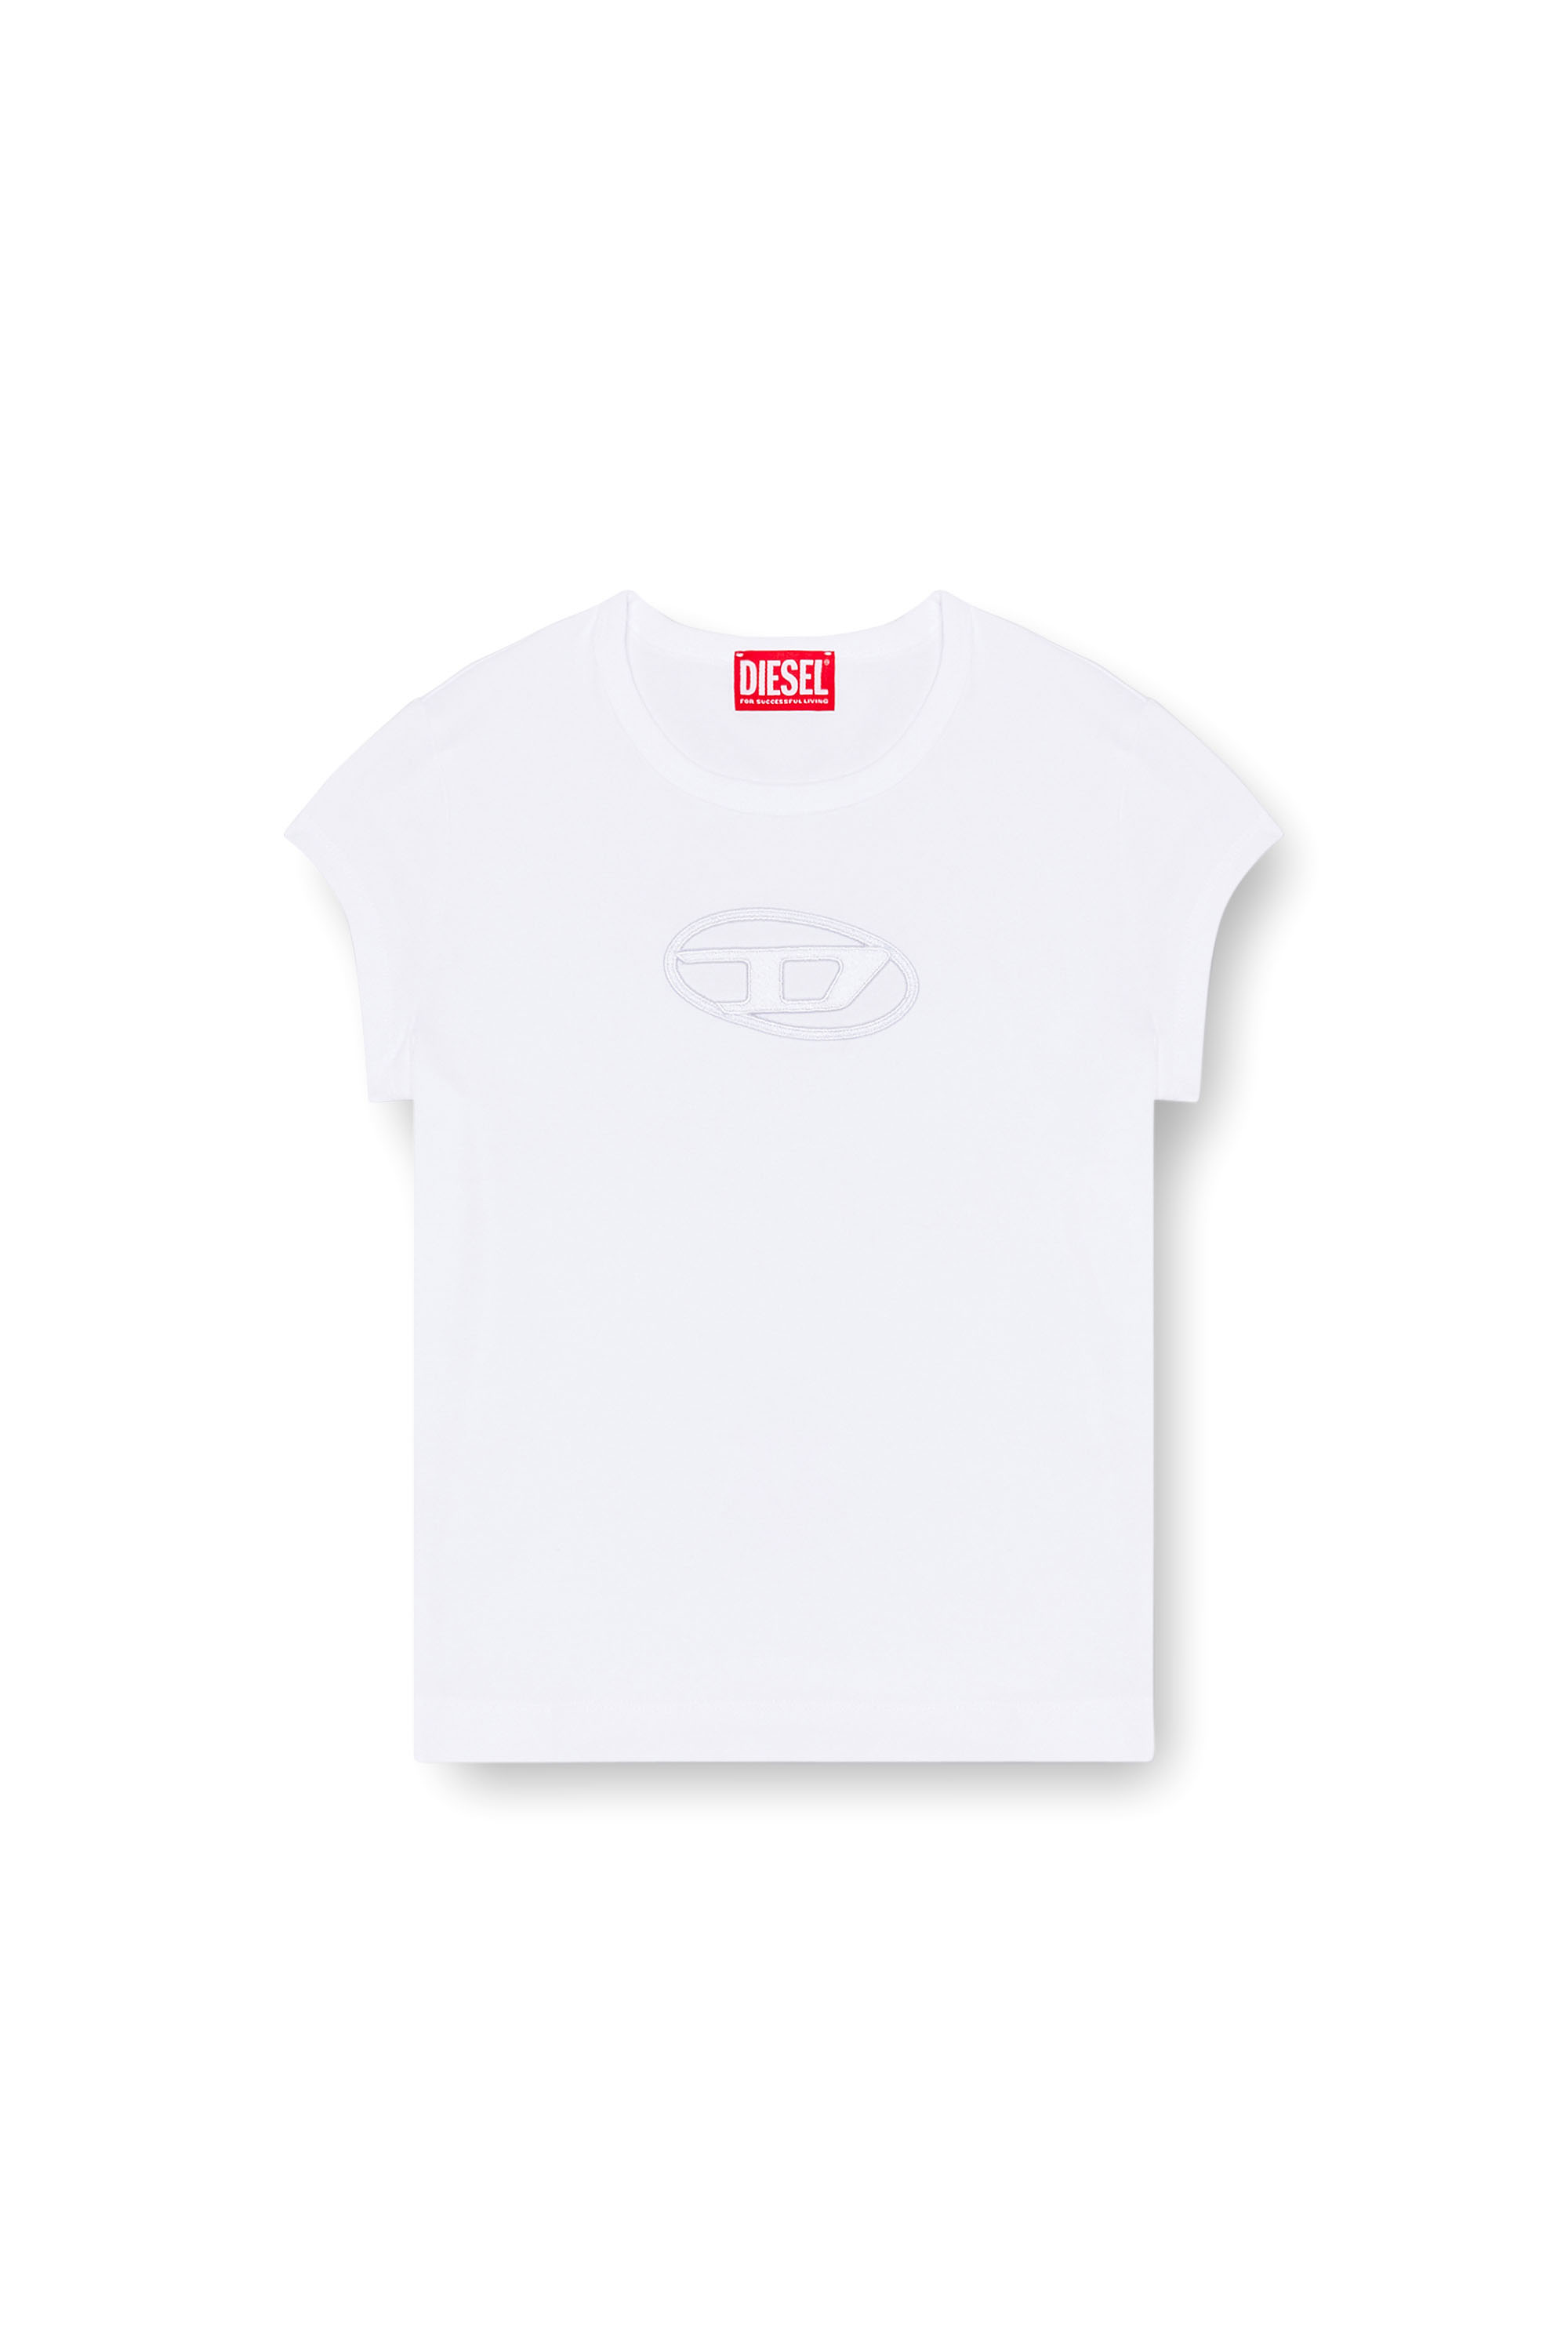 【新品】DIESEL ディーゼル T-Angie ロゴ Tシャツ ホワイト S